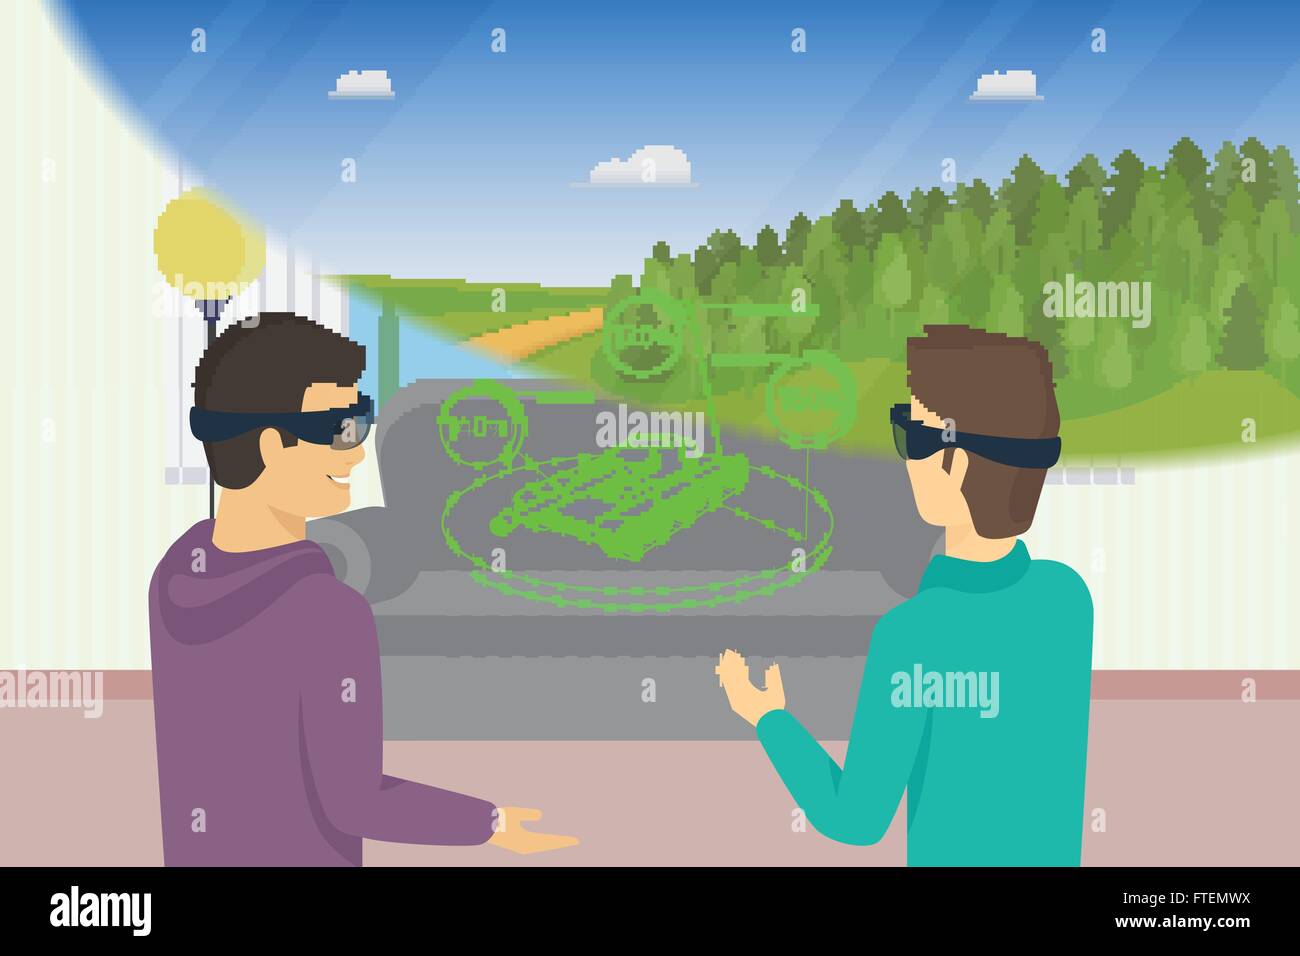 Heureux les gars joue à l'aide de jeux vidéo head-mounted device pour la réalité virtuelle et augmentée Illustration de Vecteur